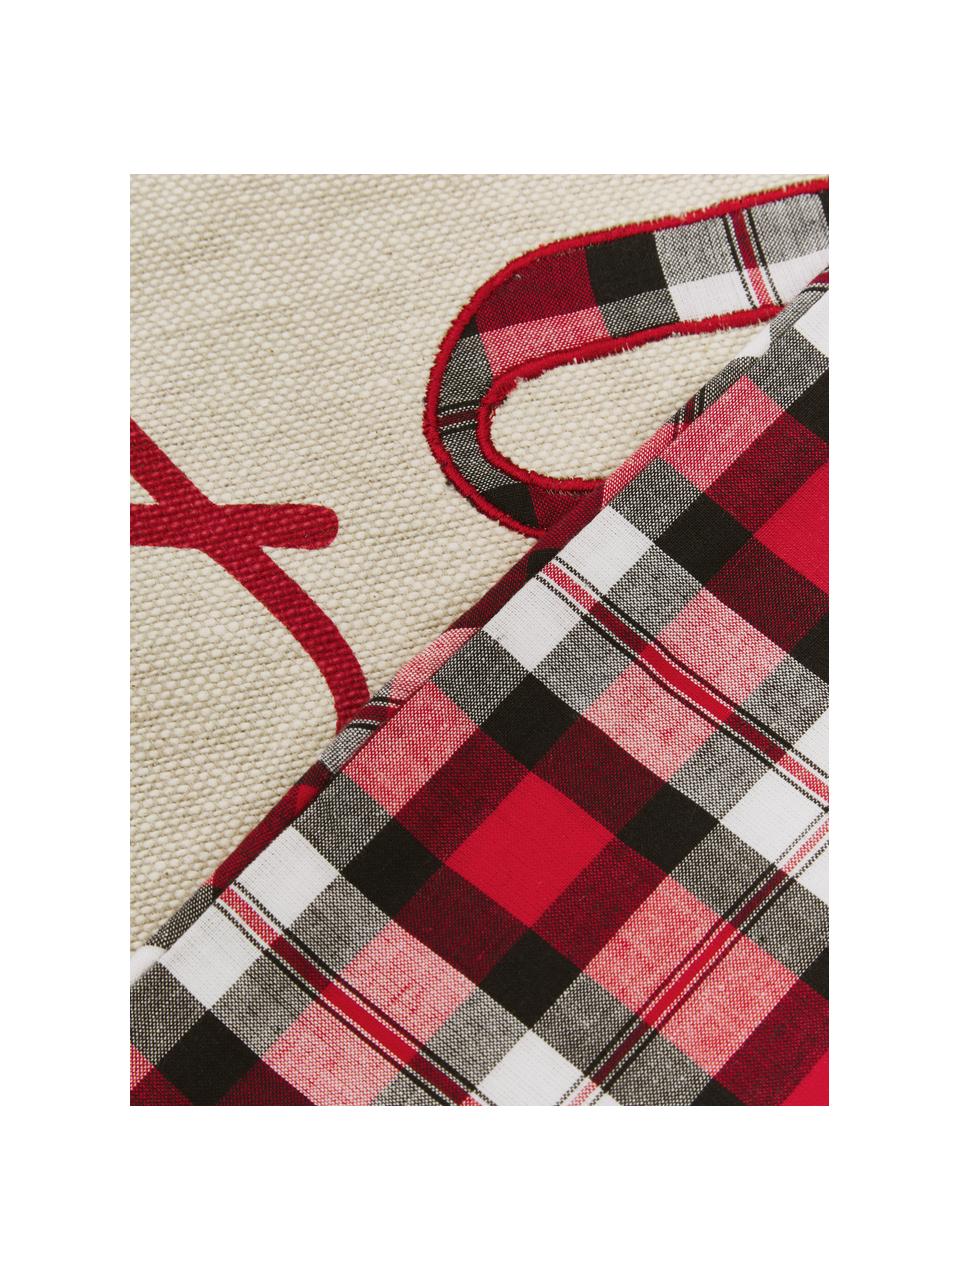 Dwustronna poszewka na poduszkę Chilly, 100% bawełna, Beżowy, czerwony, zielony, S 45 x D 45 cm